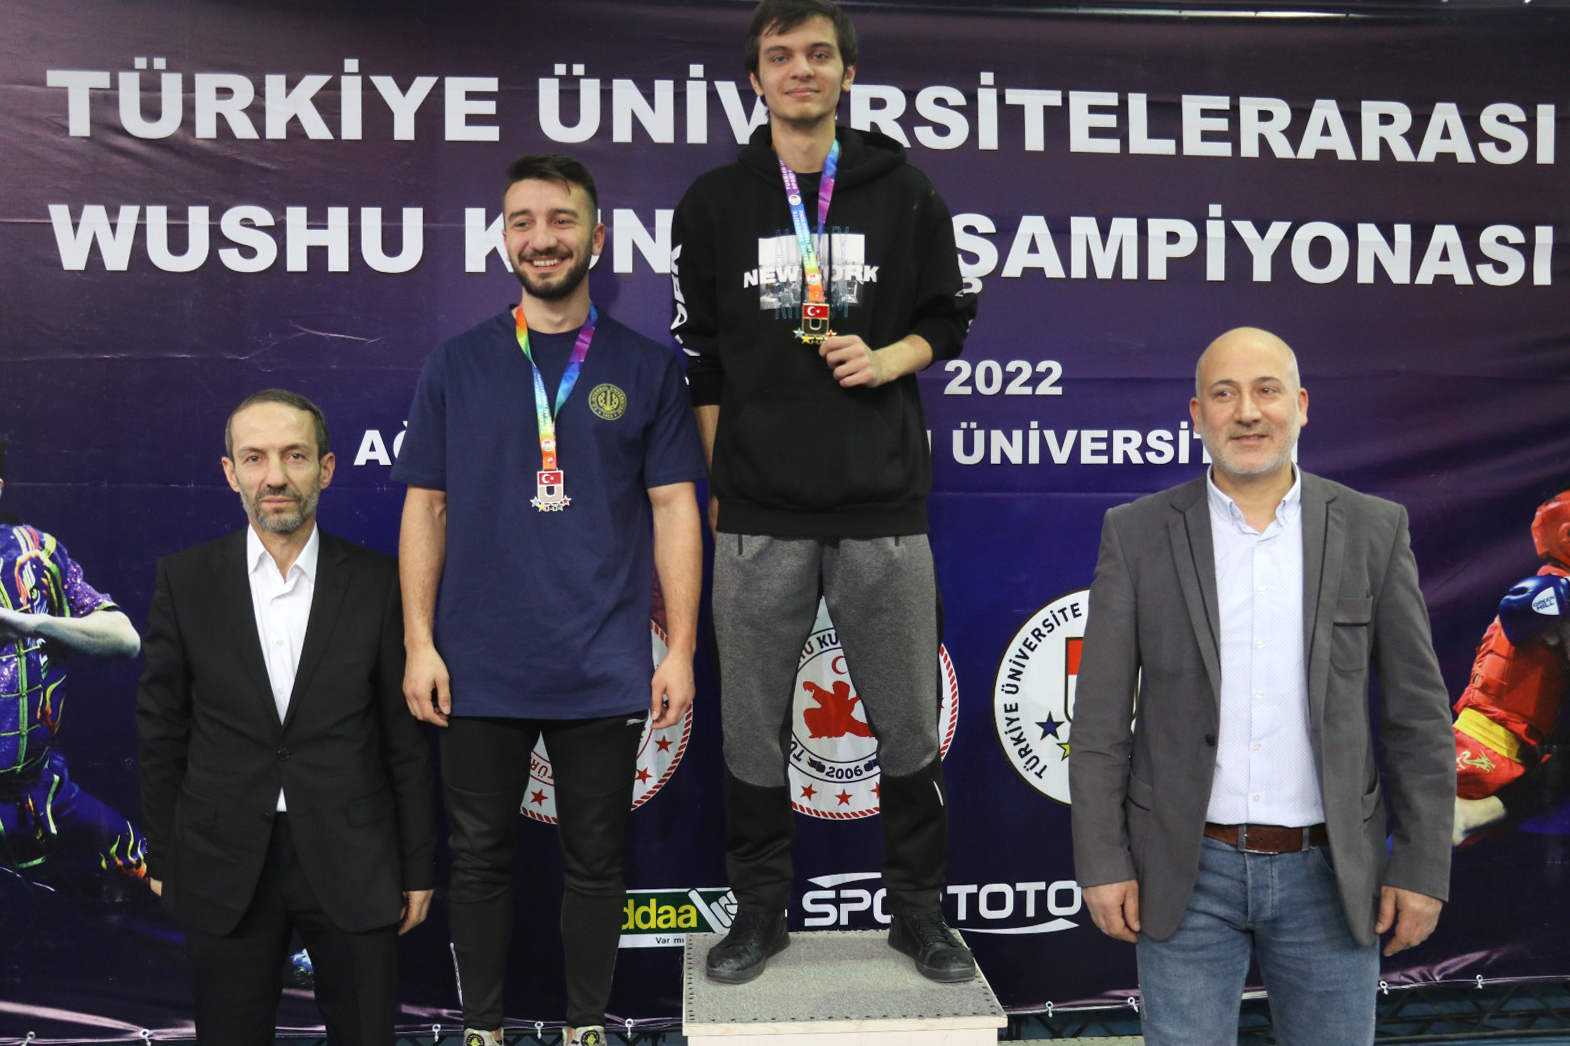 AİÇÜ Ev Sahipliğinde Düzenlenen Türkiye Üniversiteler Wushu Şampiyonası Sona Erdi